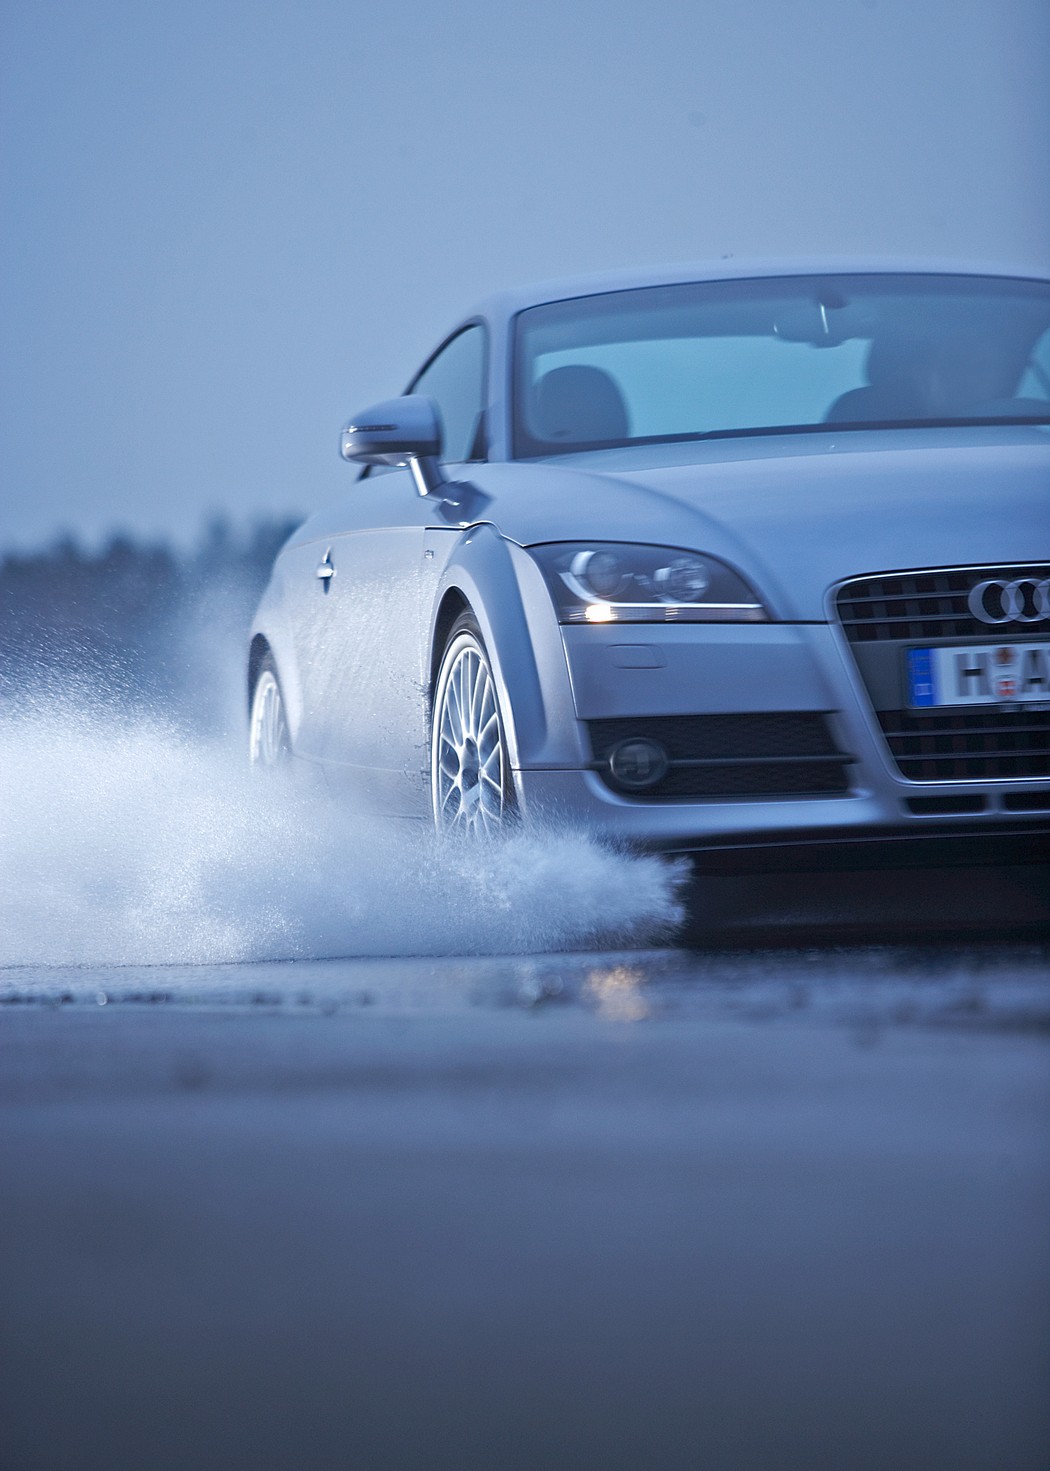 Lyjant lietui saugokitės akvaplanavimo: kaip suvaldyti slystantį automobilį?